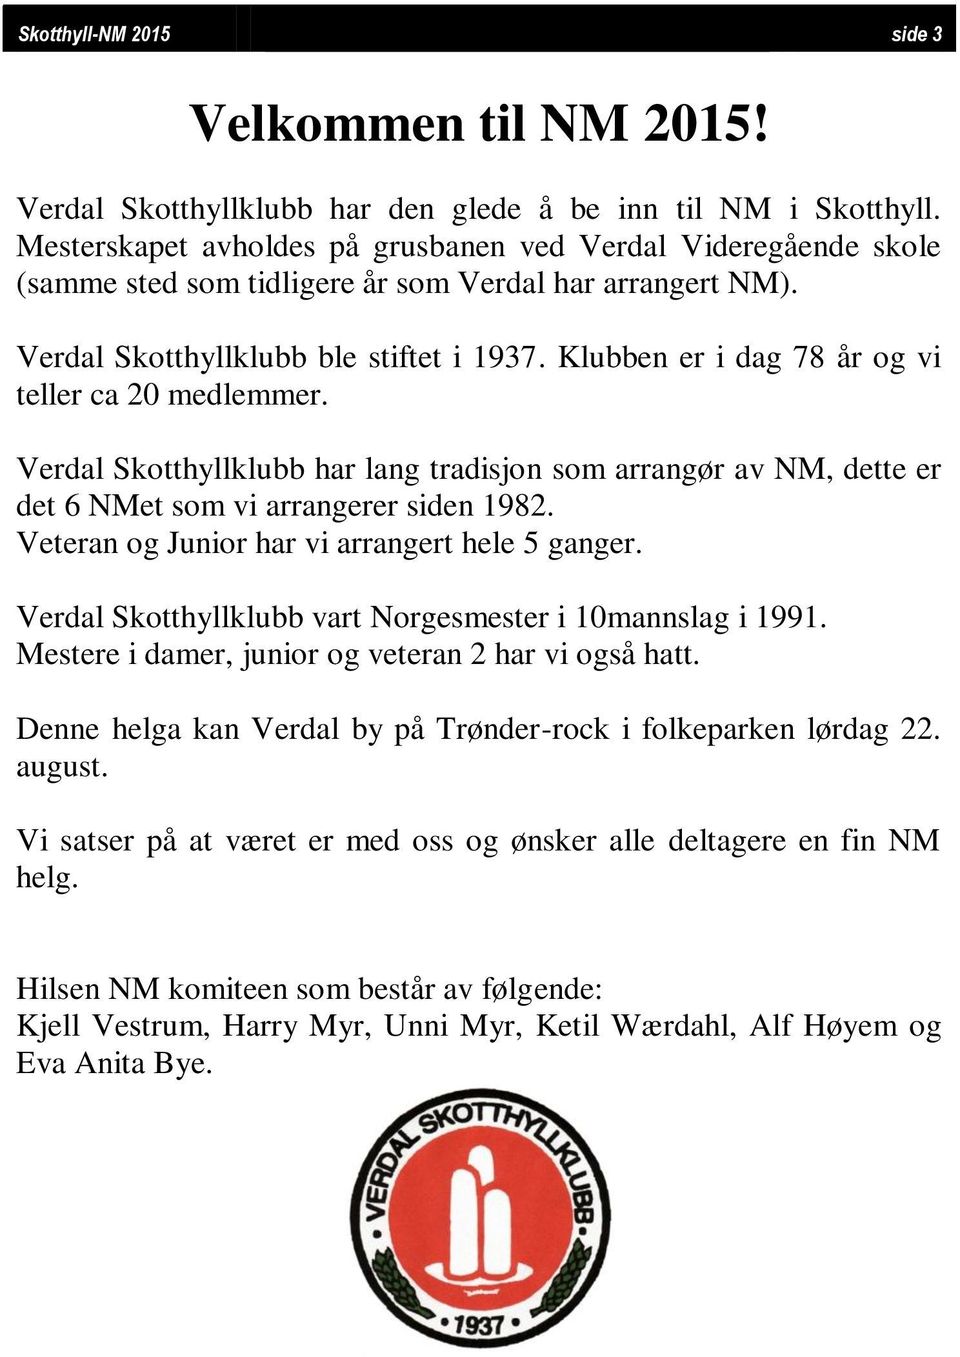 Klubben er i dag 78 år og vi teller ca 20 medlemmer. Verdal Skotthyllklubb har lang tradisjon som arrangør av NM, dette er det 6 NMet som vi arrangerer siden 1982.